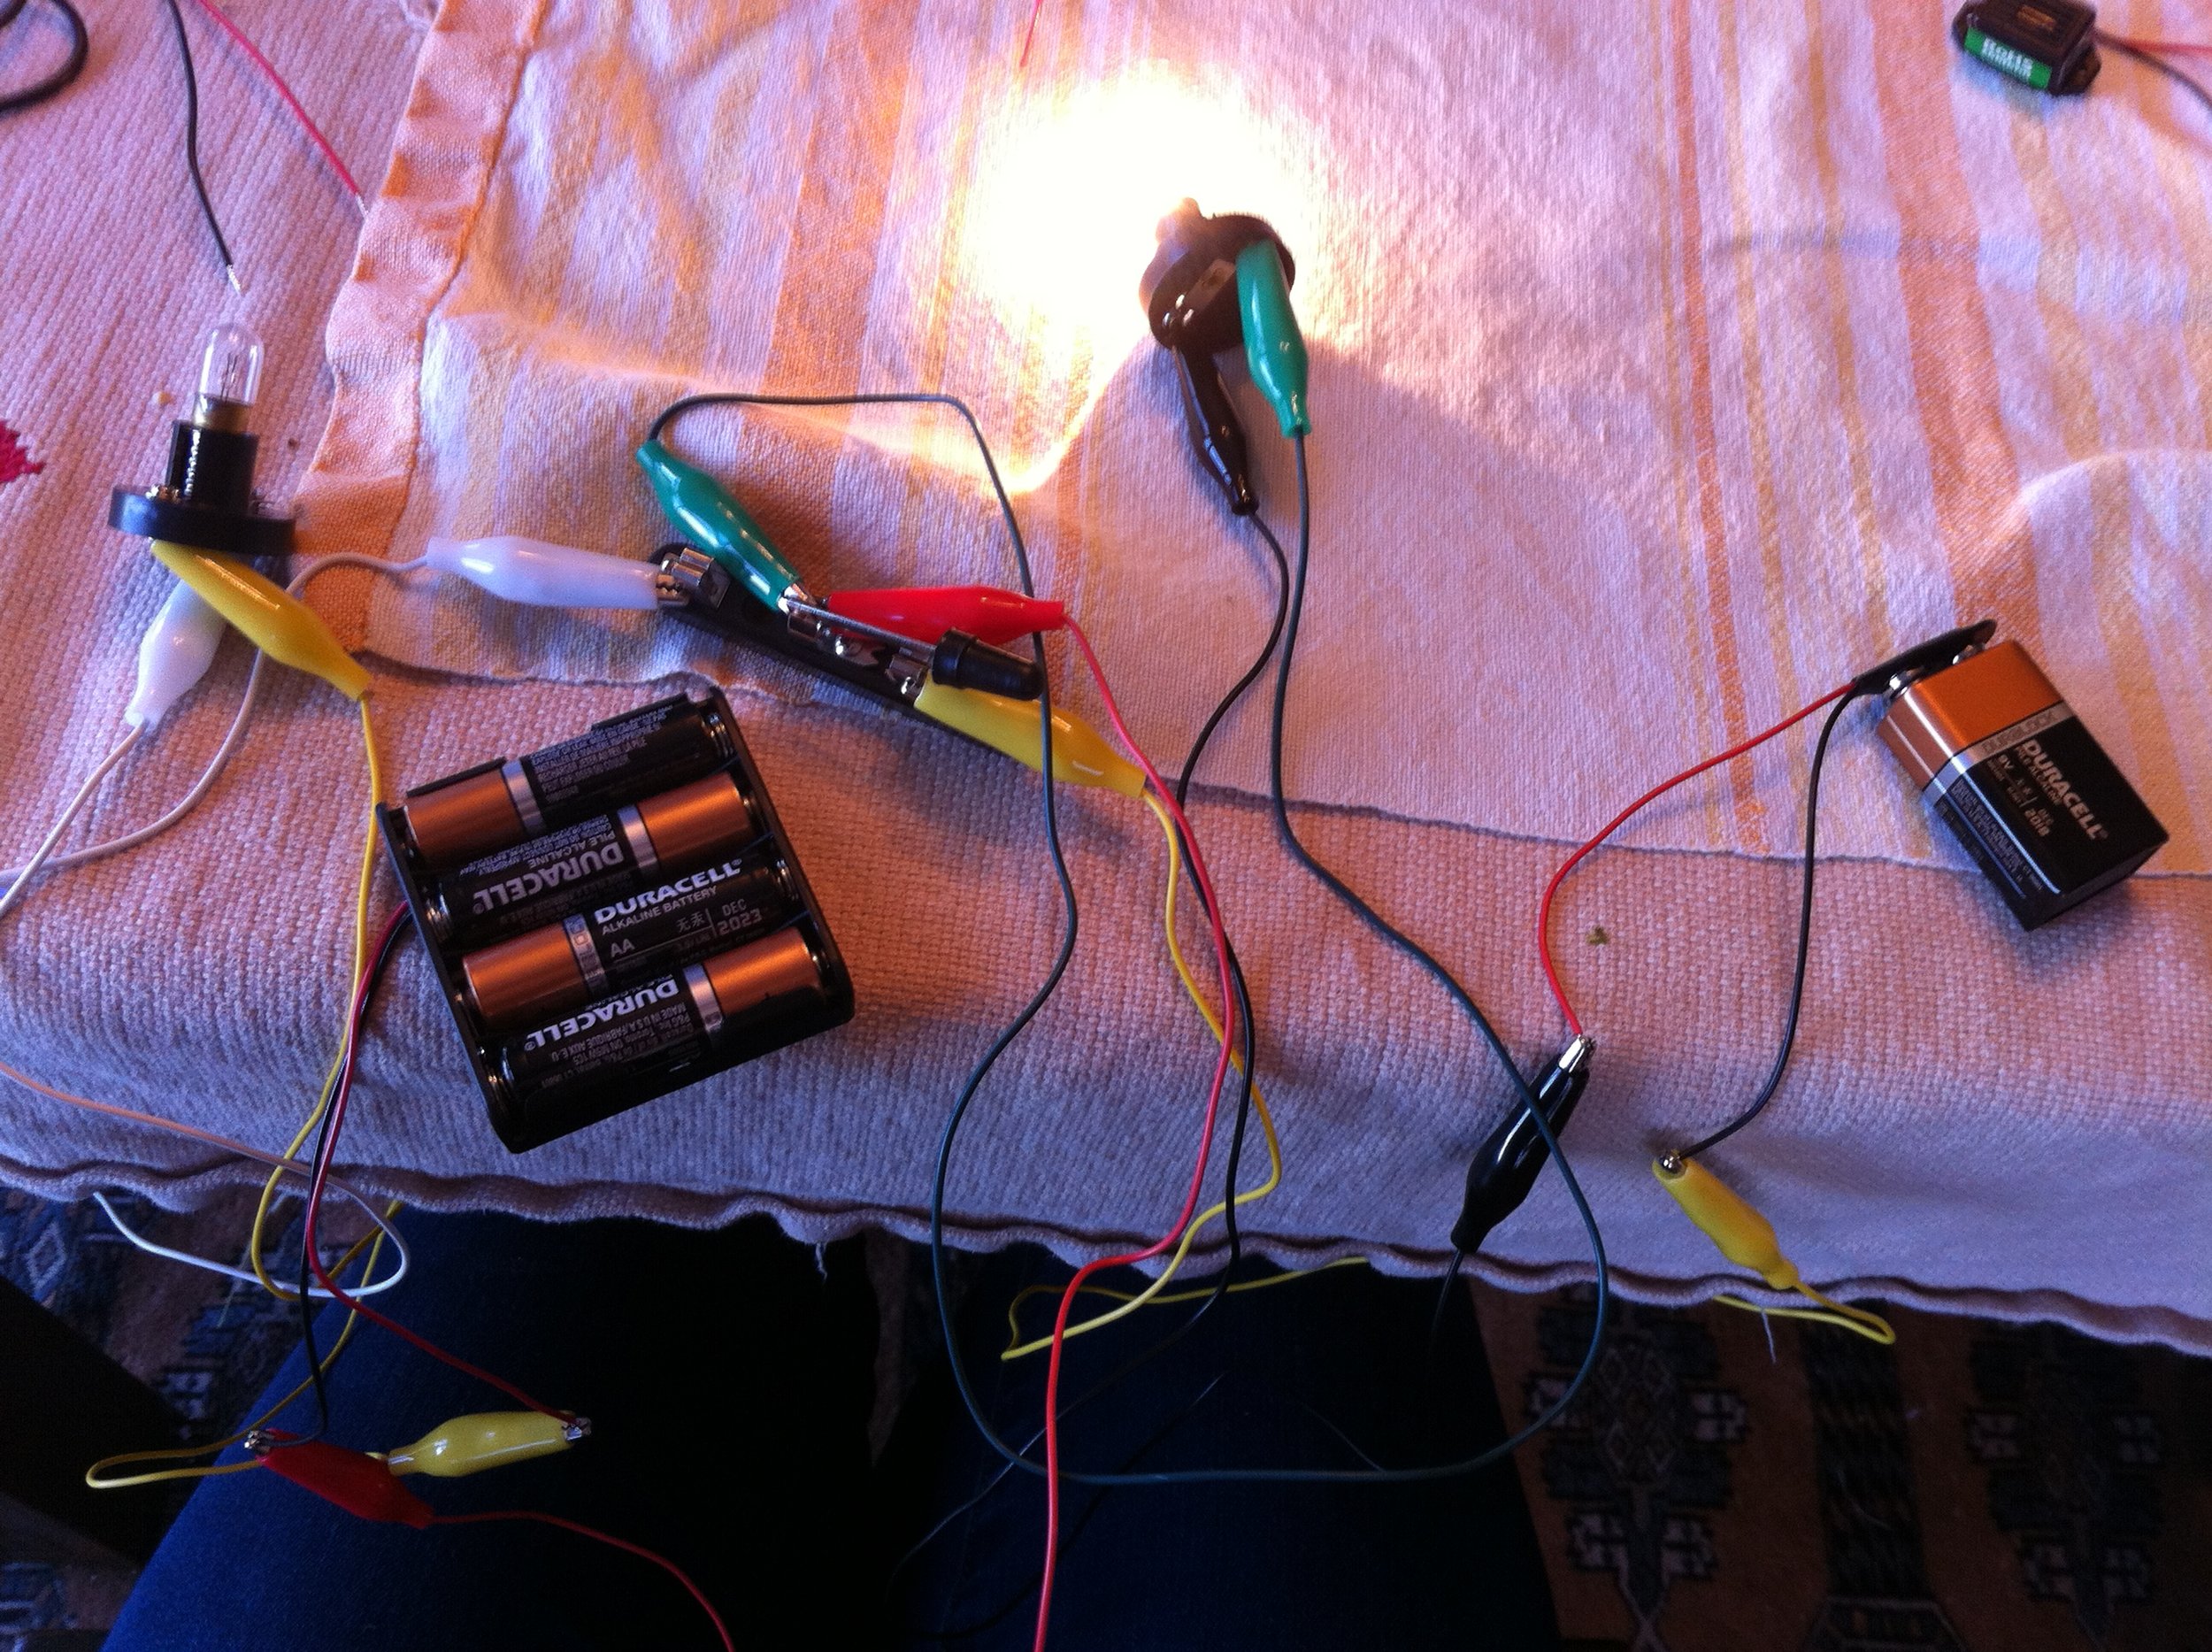   Circuitos eléctricos Construye tu propio circuito con luces e interruptores, y descubre cómo funcionan los circuitos. 